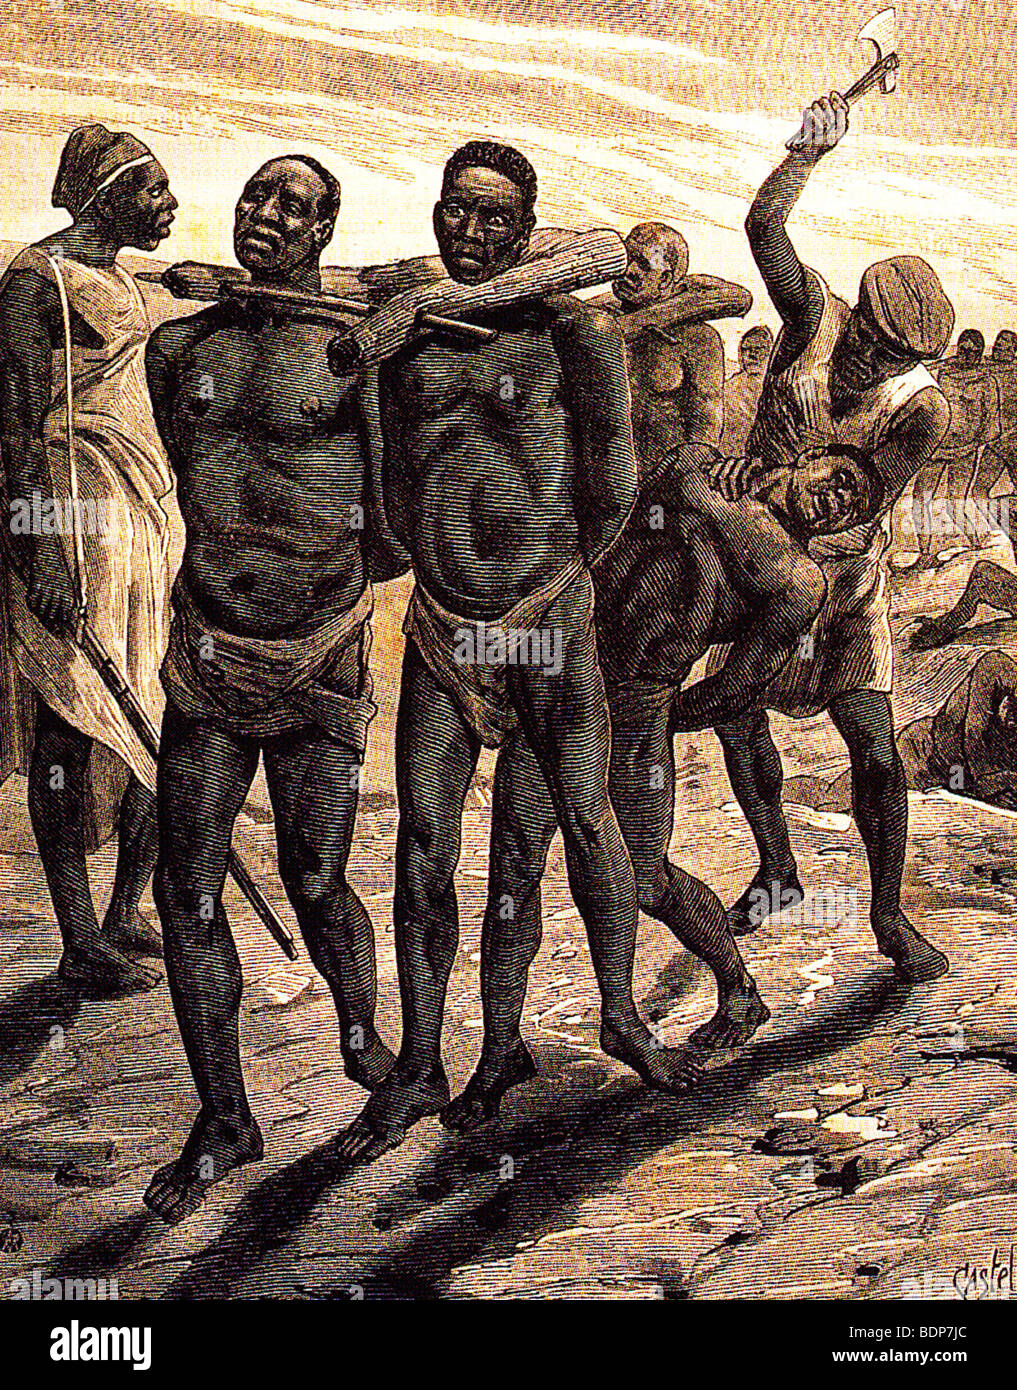 La Schiavitù rivista francese illustrazione degli Arabi di mercanti di schiavi con i loro prigionieri Foto Stock